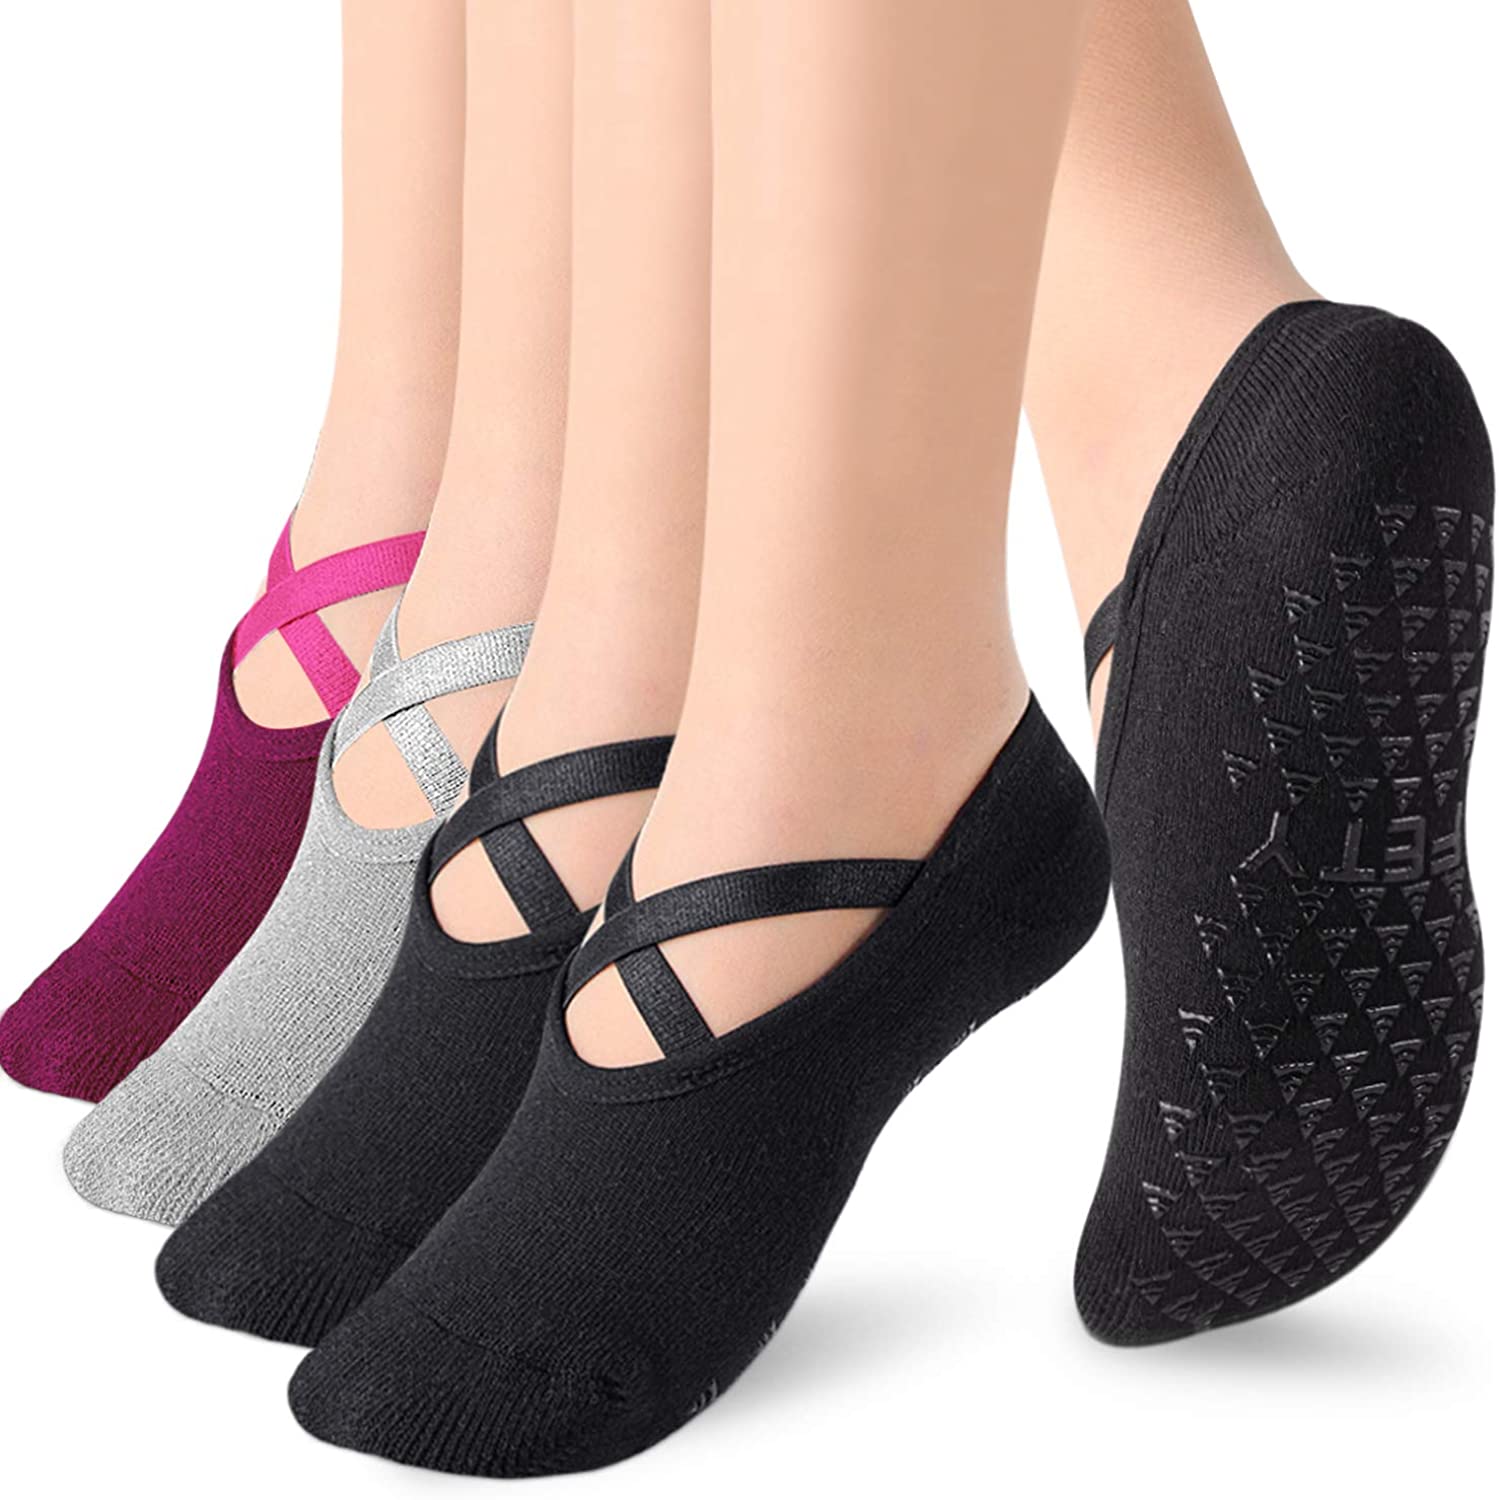 Calcetines de yoga con empuñaduras para mujeres, calcetines antideslizantes  para pilates y puros barre y hospital y caminar, danza e interior (paquete